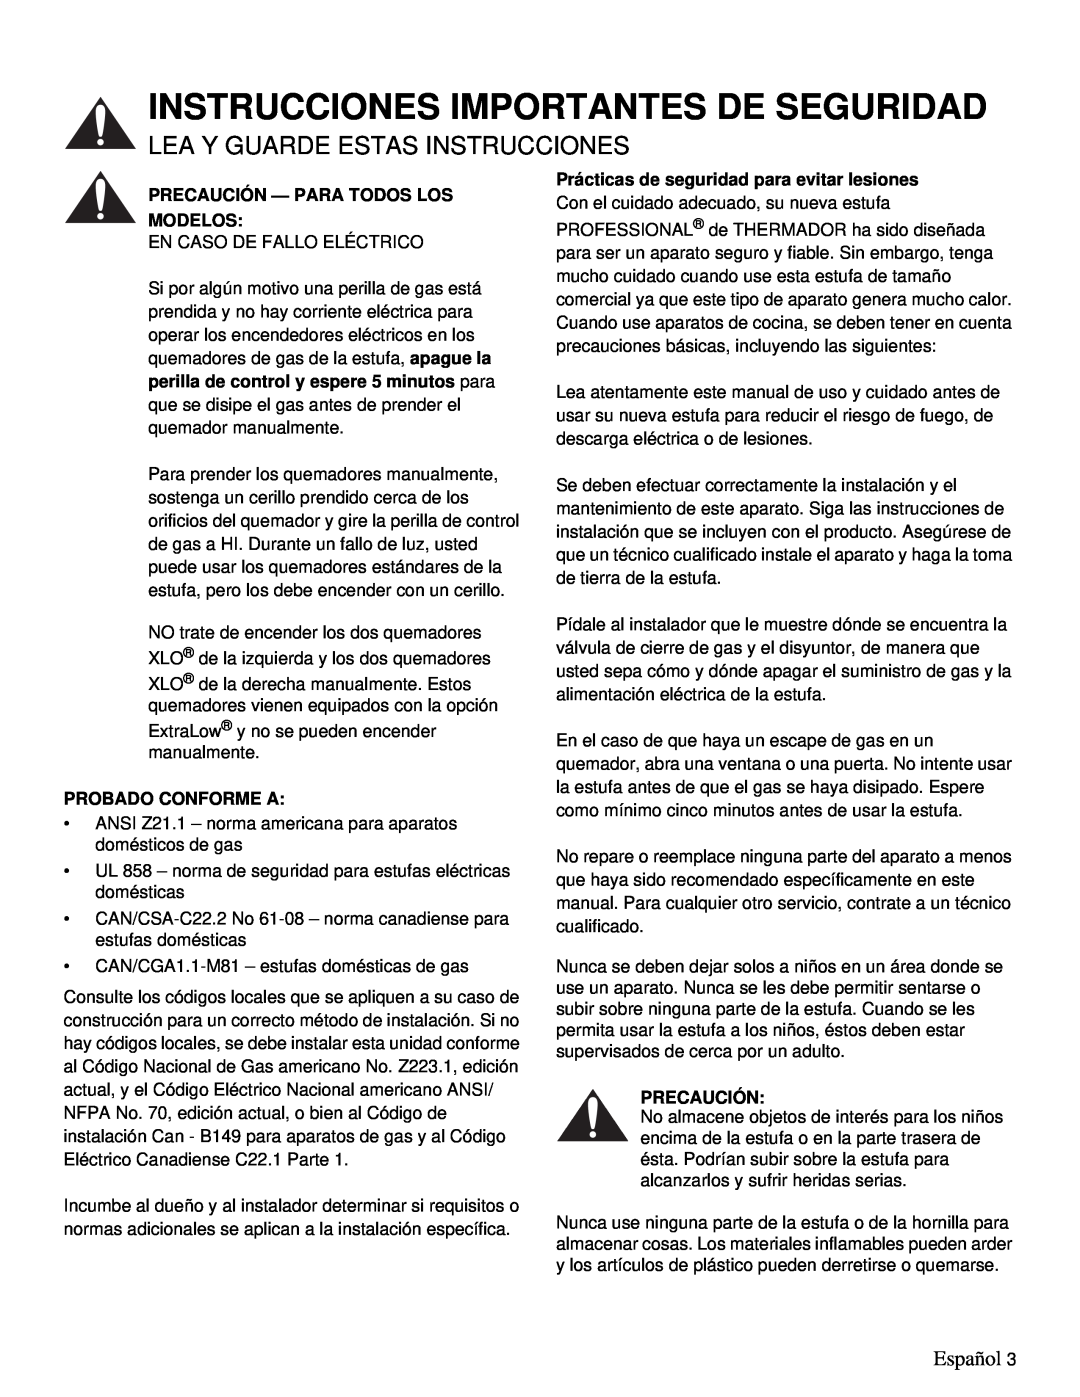 Thermador PRD36 Instrucciones Importantes De Seguridad, Lea Y Guarde Estas Instrucciones, Español, Probado Conforme A 